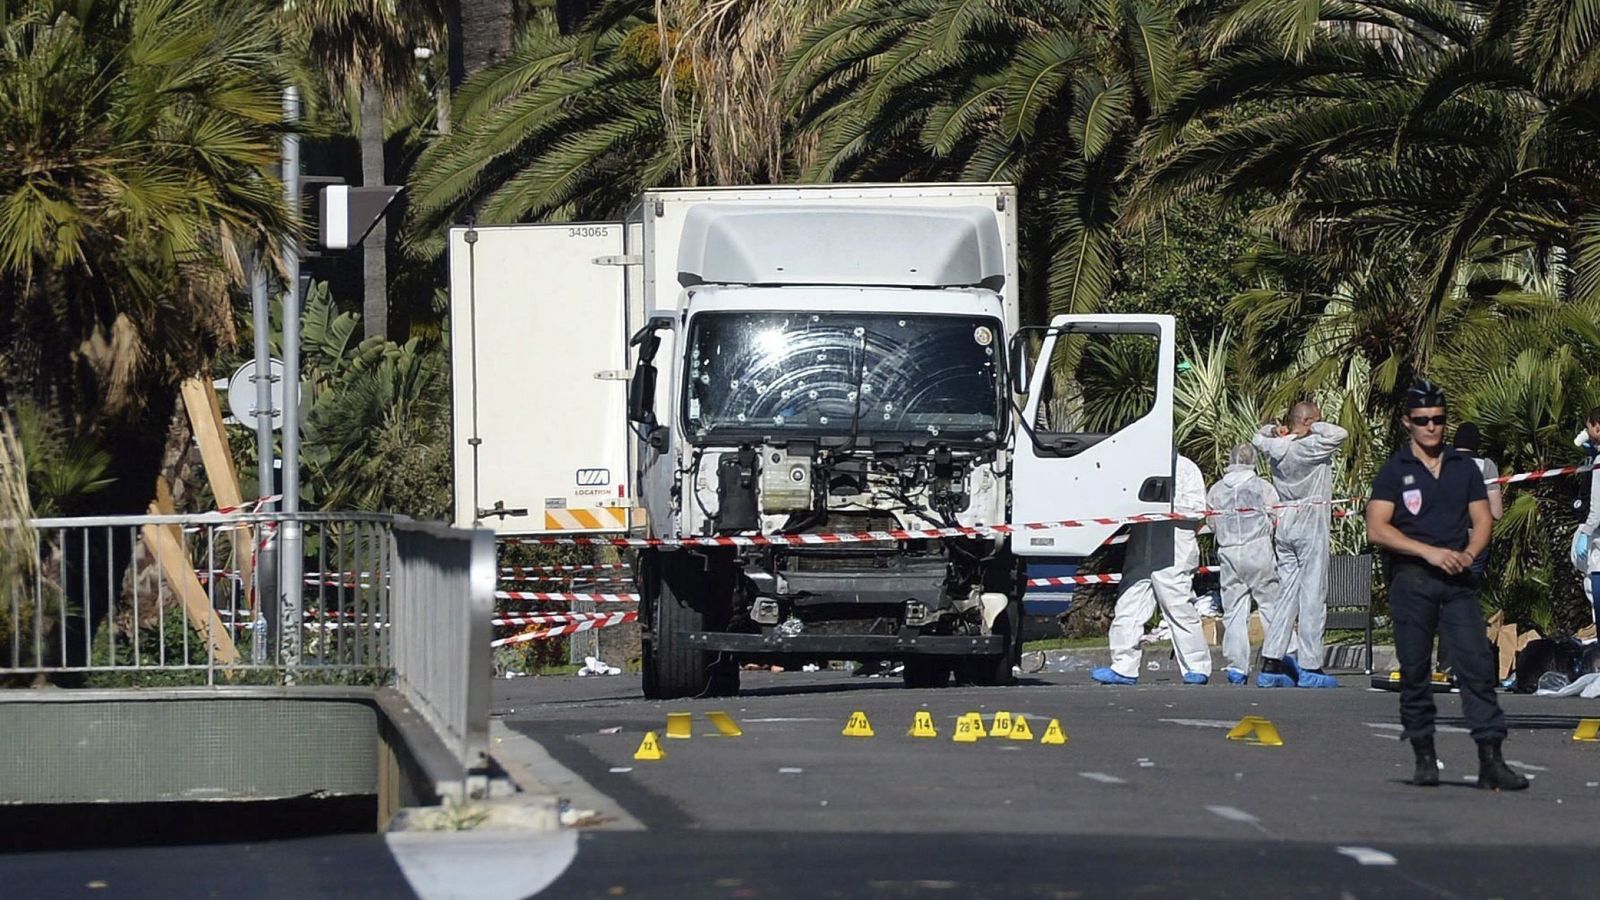 Foto: Varios policías inspeccionan el estado del camión con el que fue cometido el atentado en Niza. (Efe)